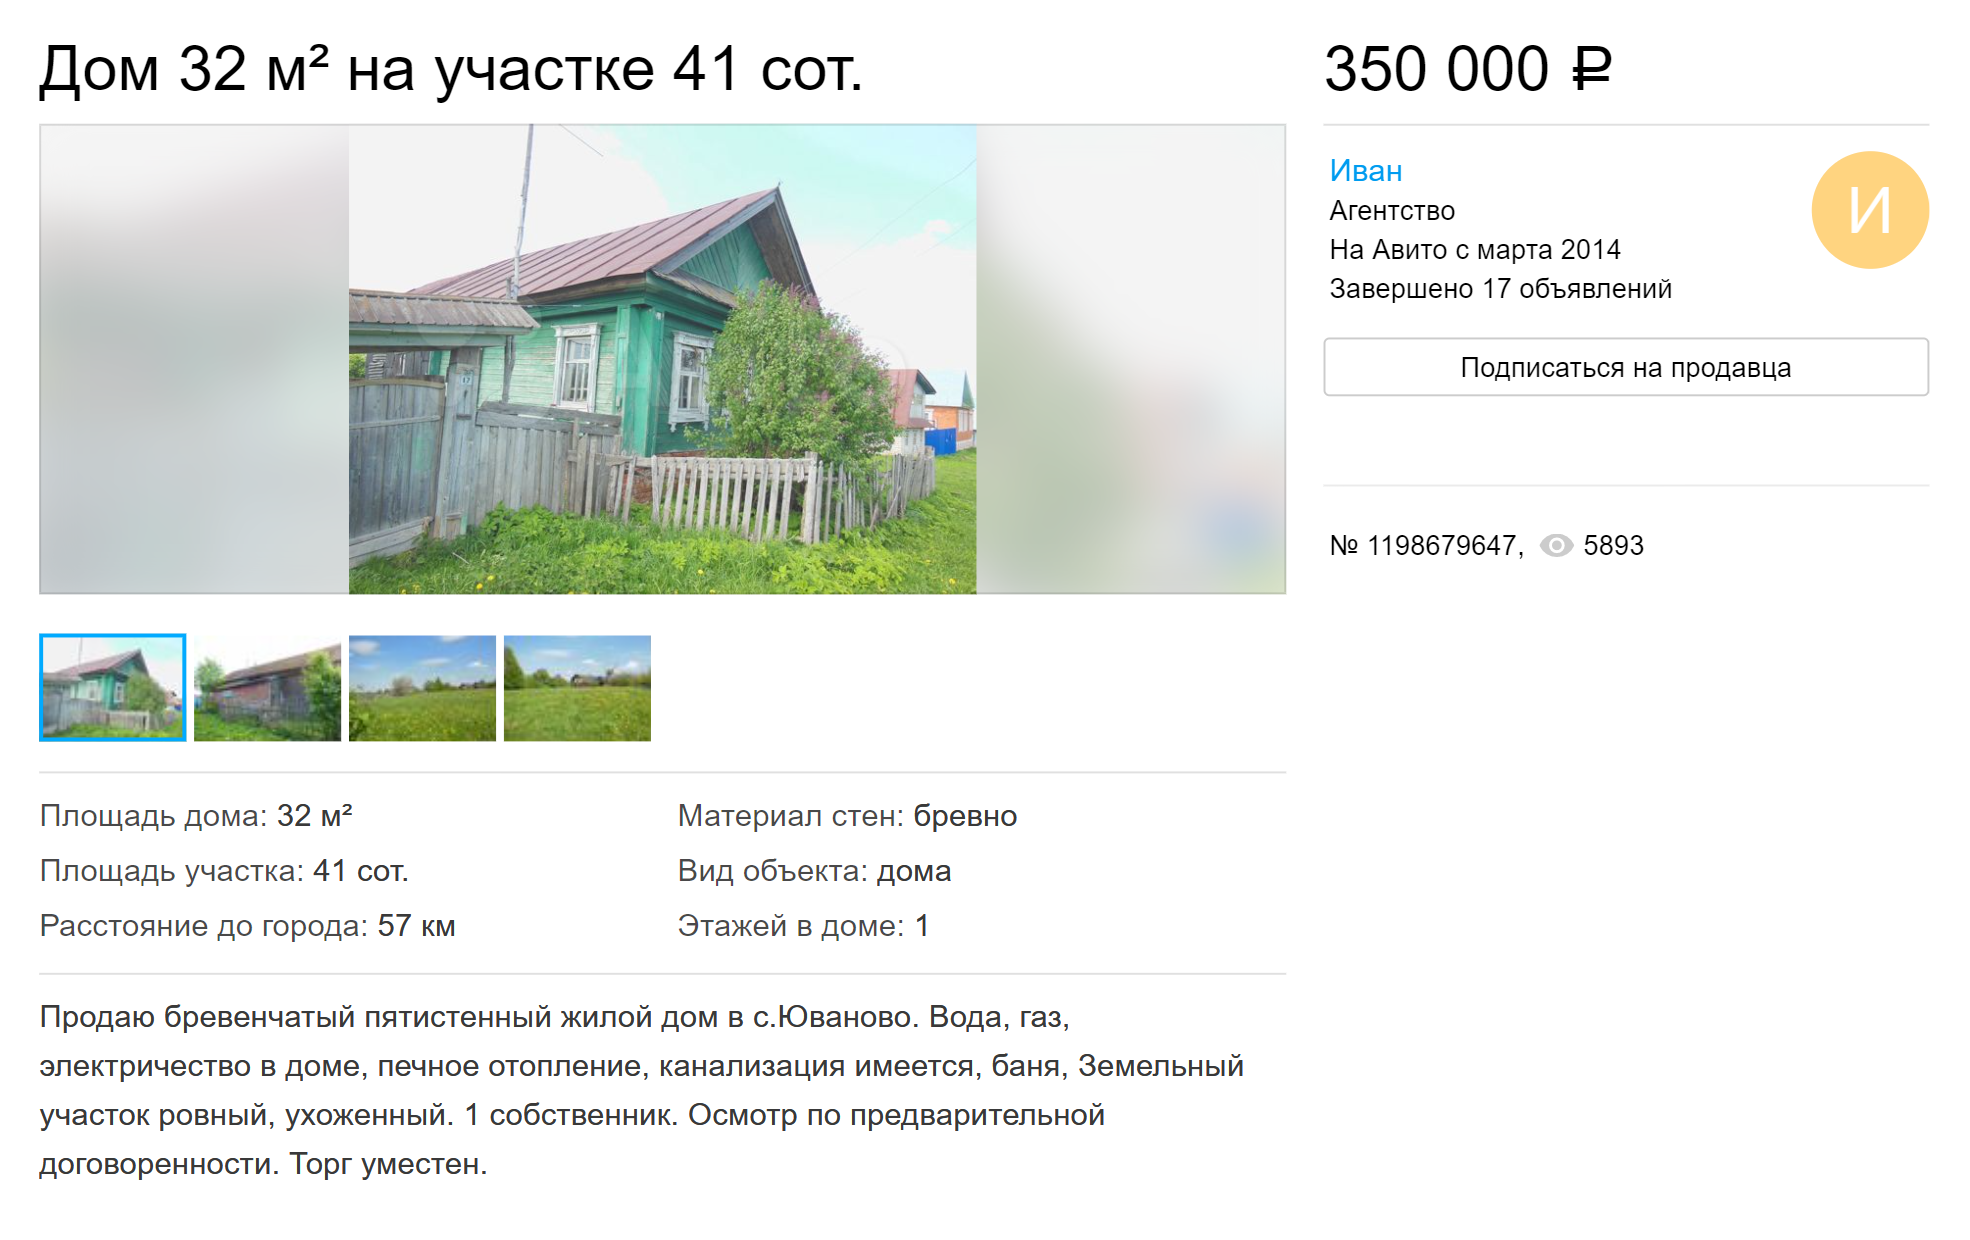 Обычный пятистенный дом с большим участком в деревне в 60 километрах от Чебоксар можно купить за 350 000 ₽